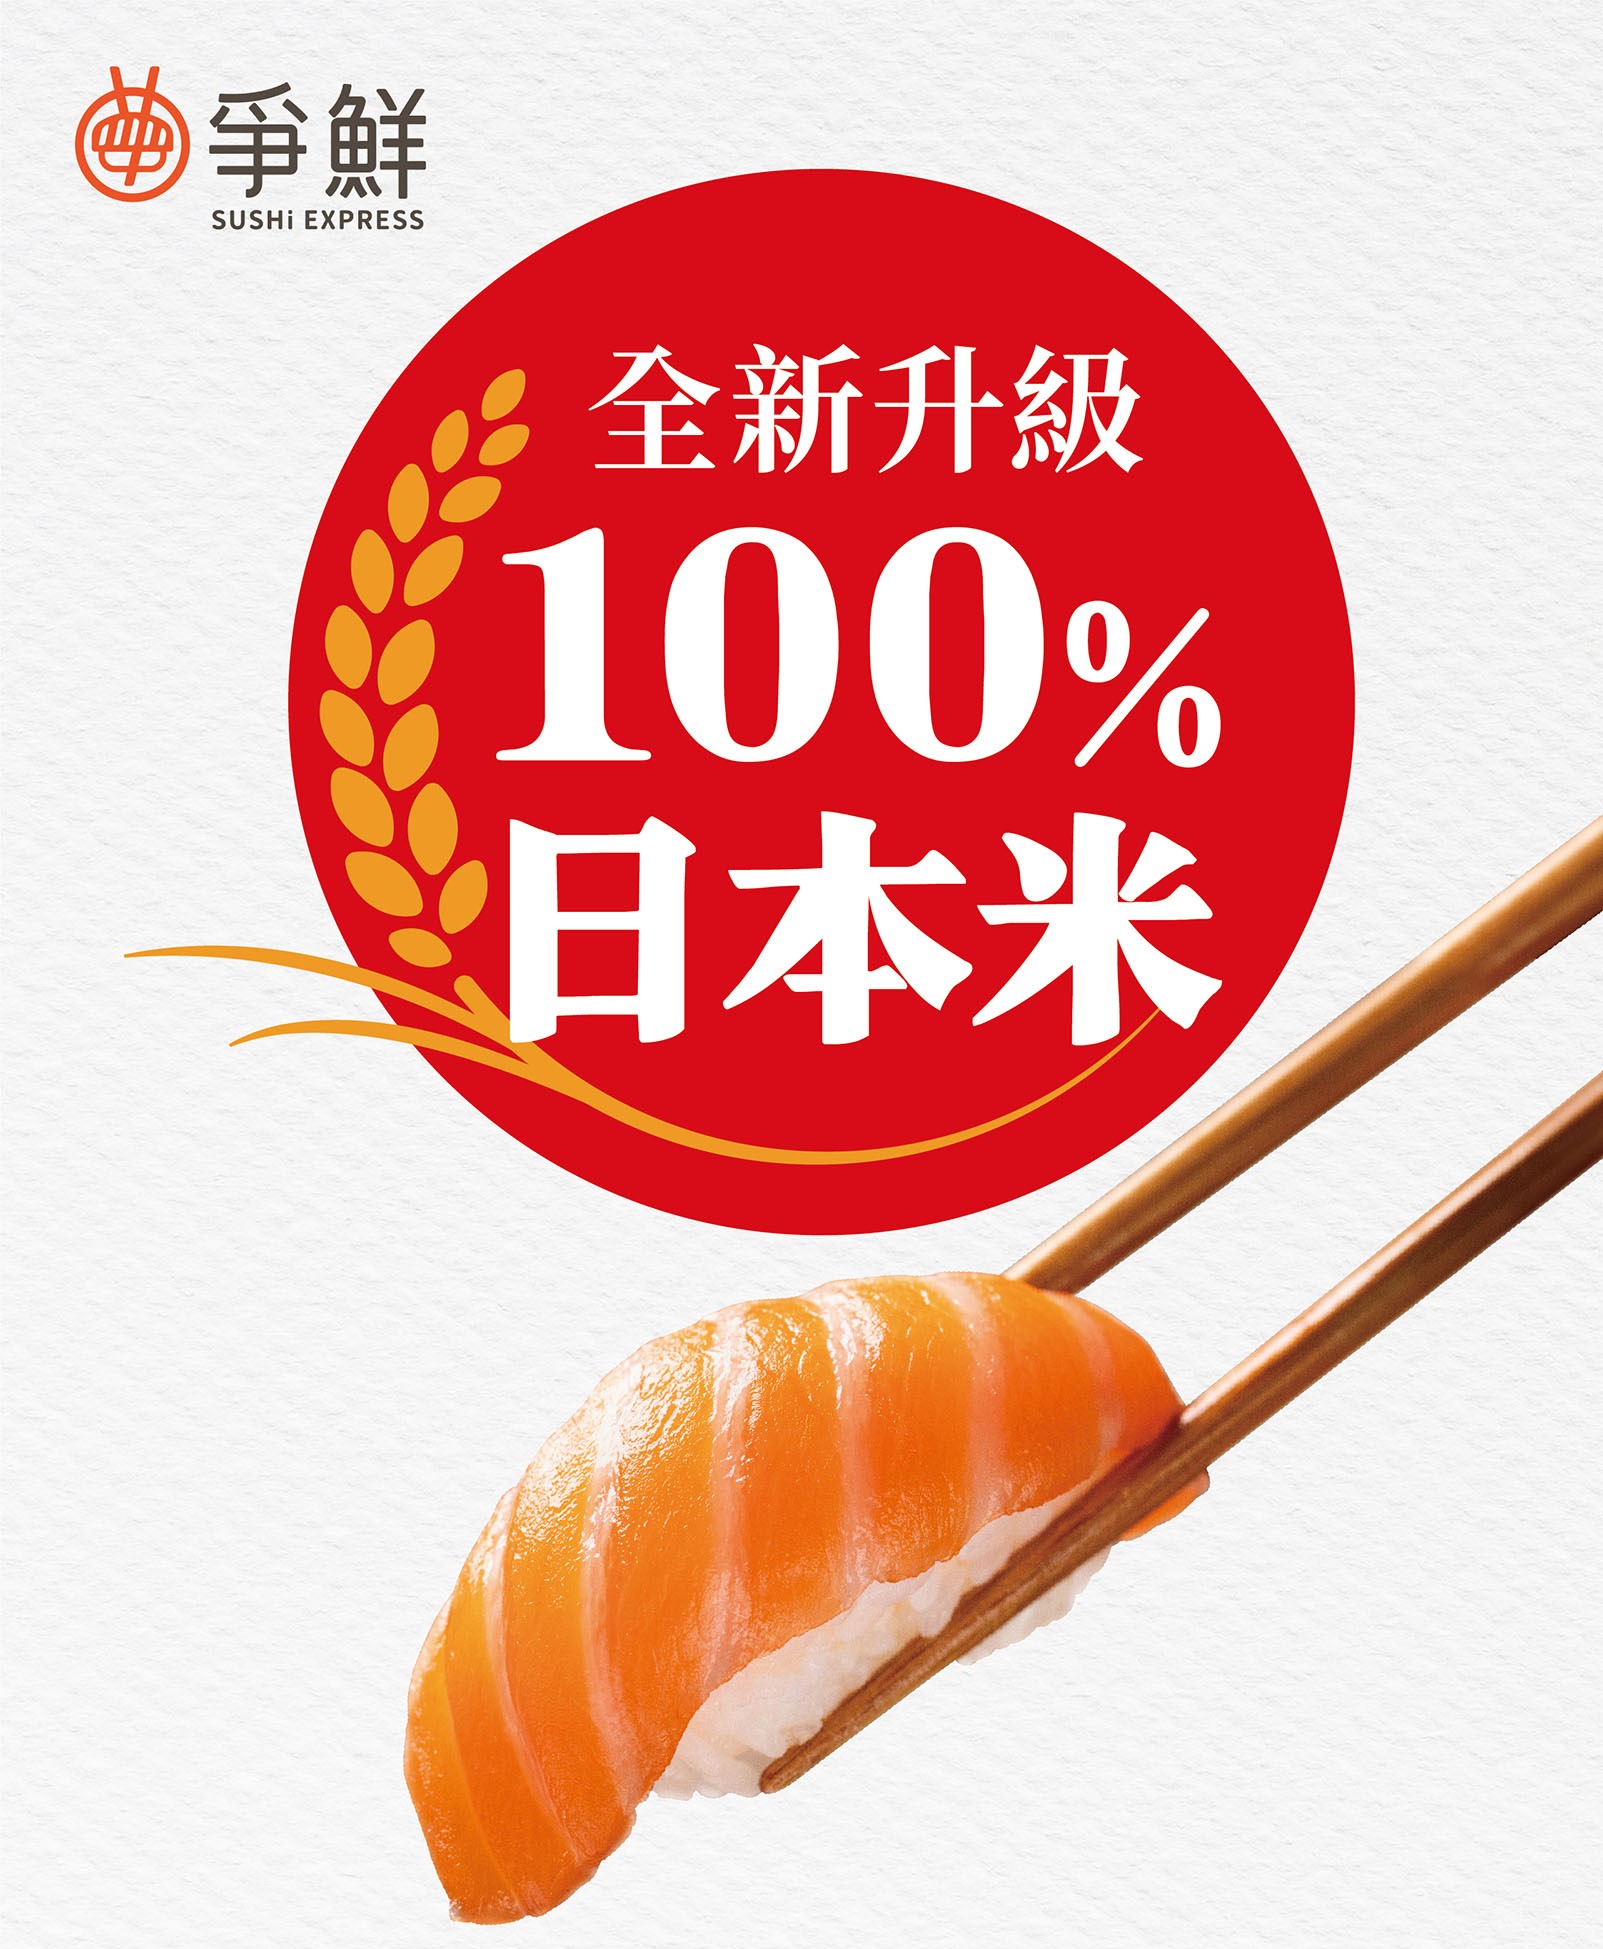 Sushi Express updates to Japanese Rice_2023jpg (1).jpg